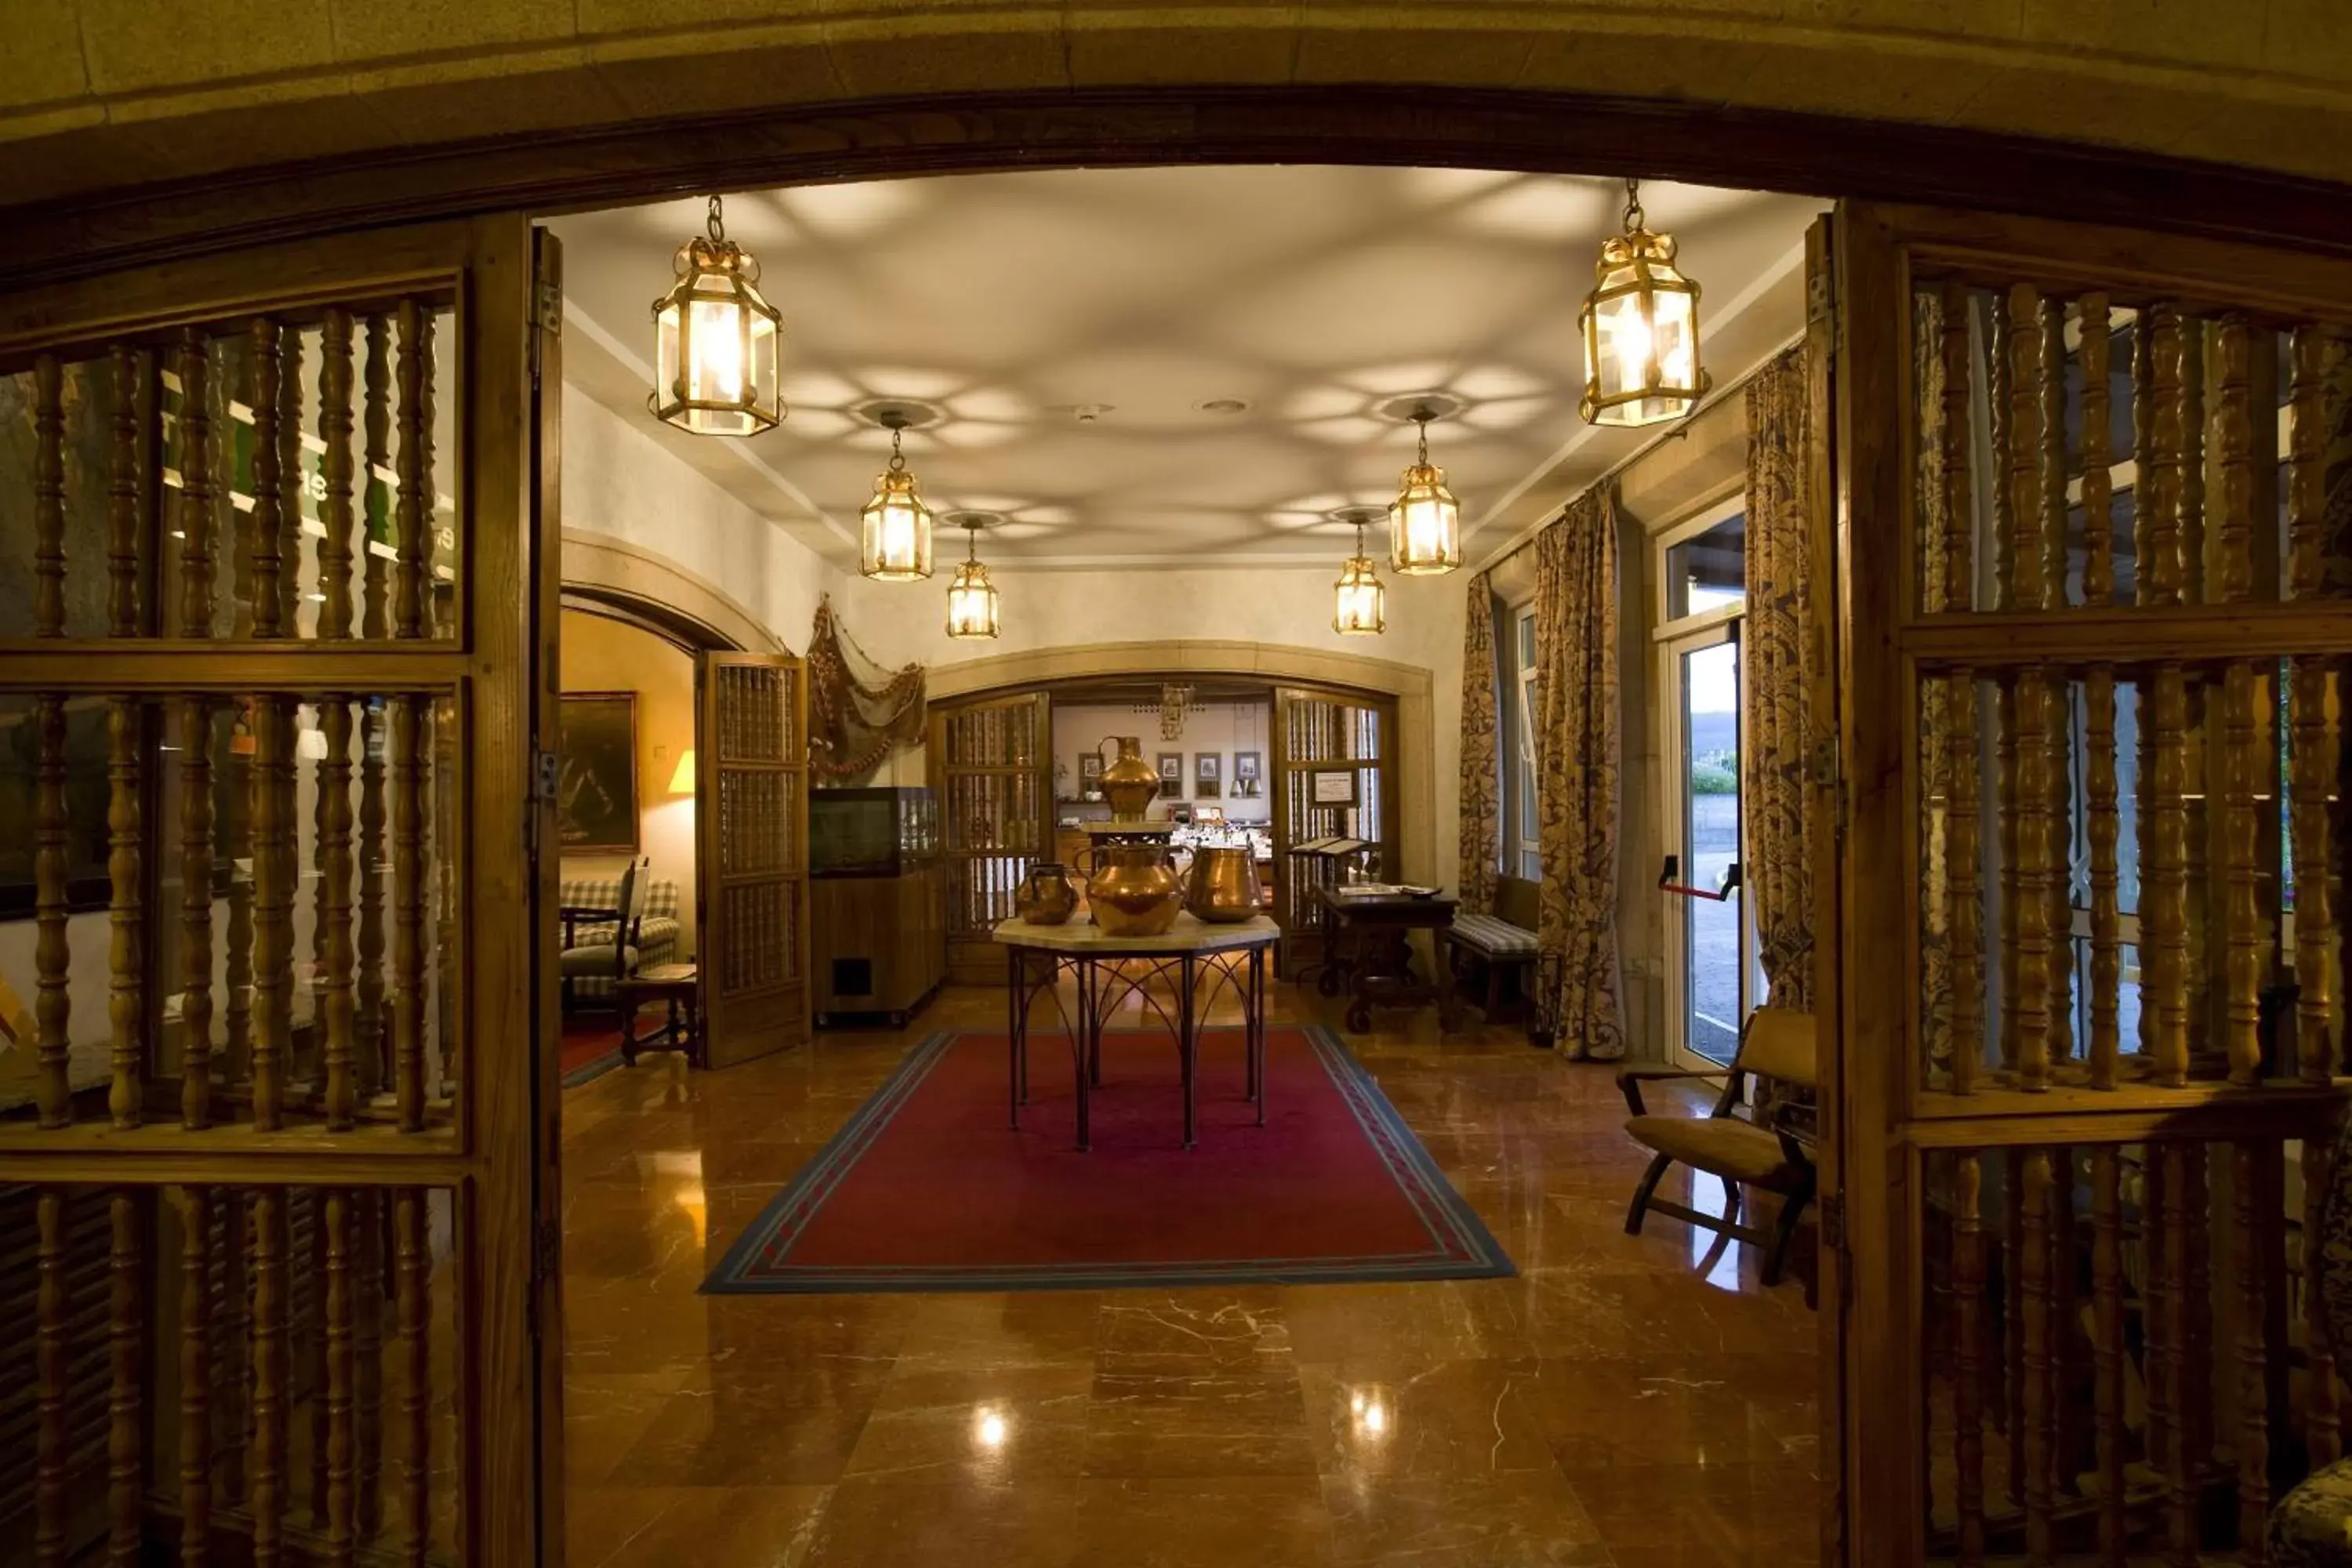 Lobby or reception in Parador de Ribadeo